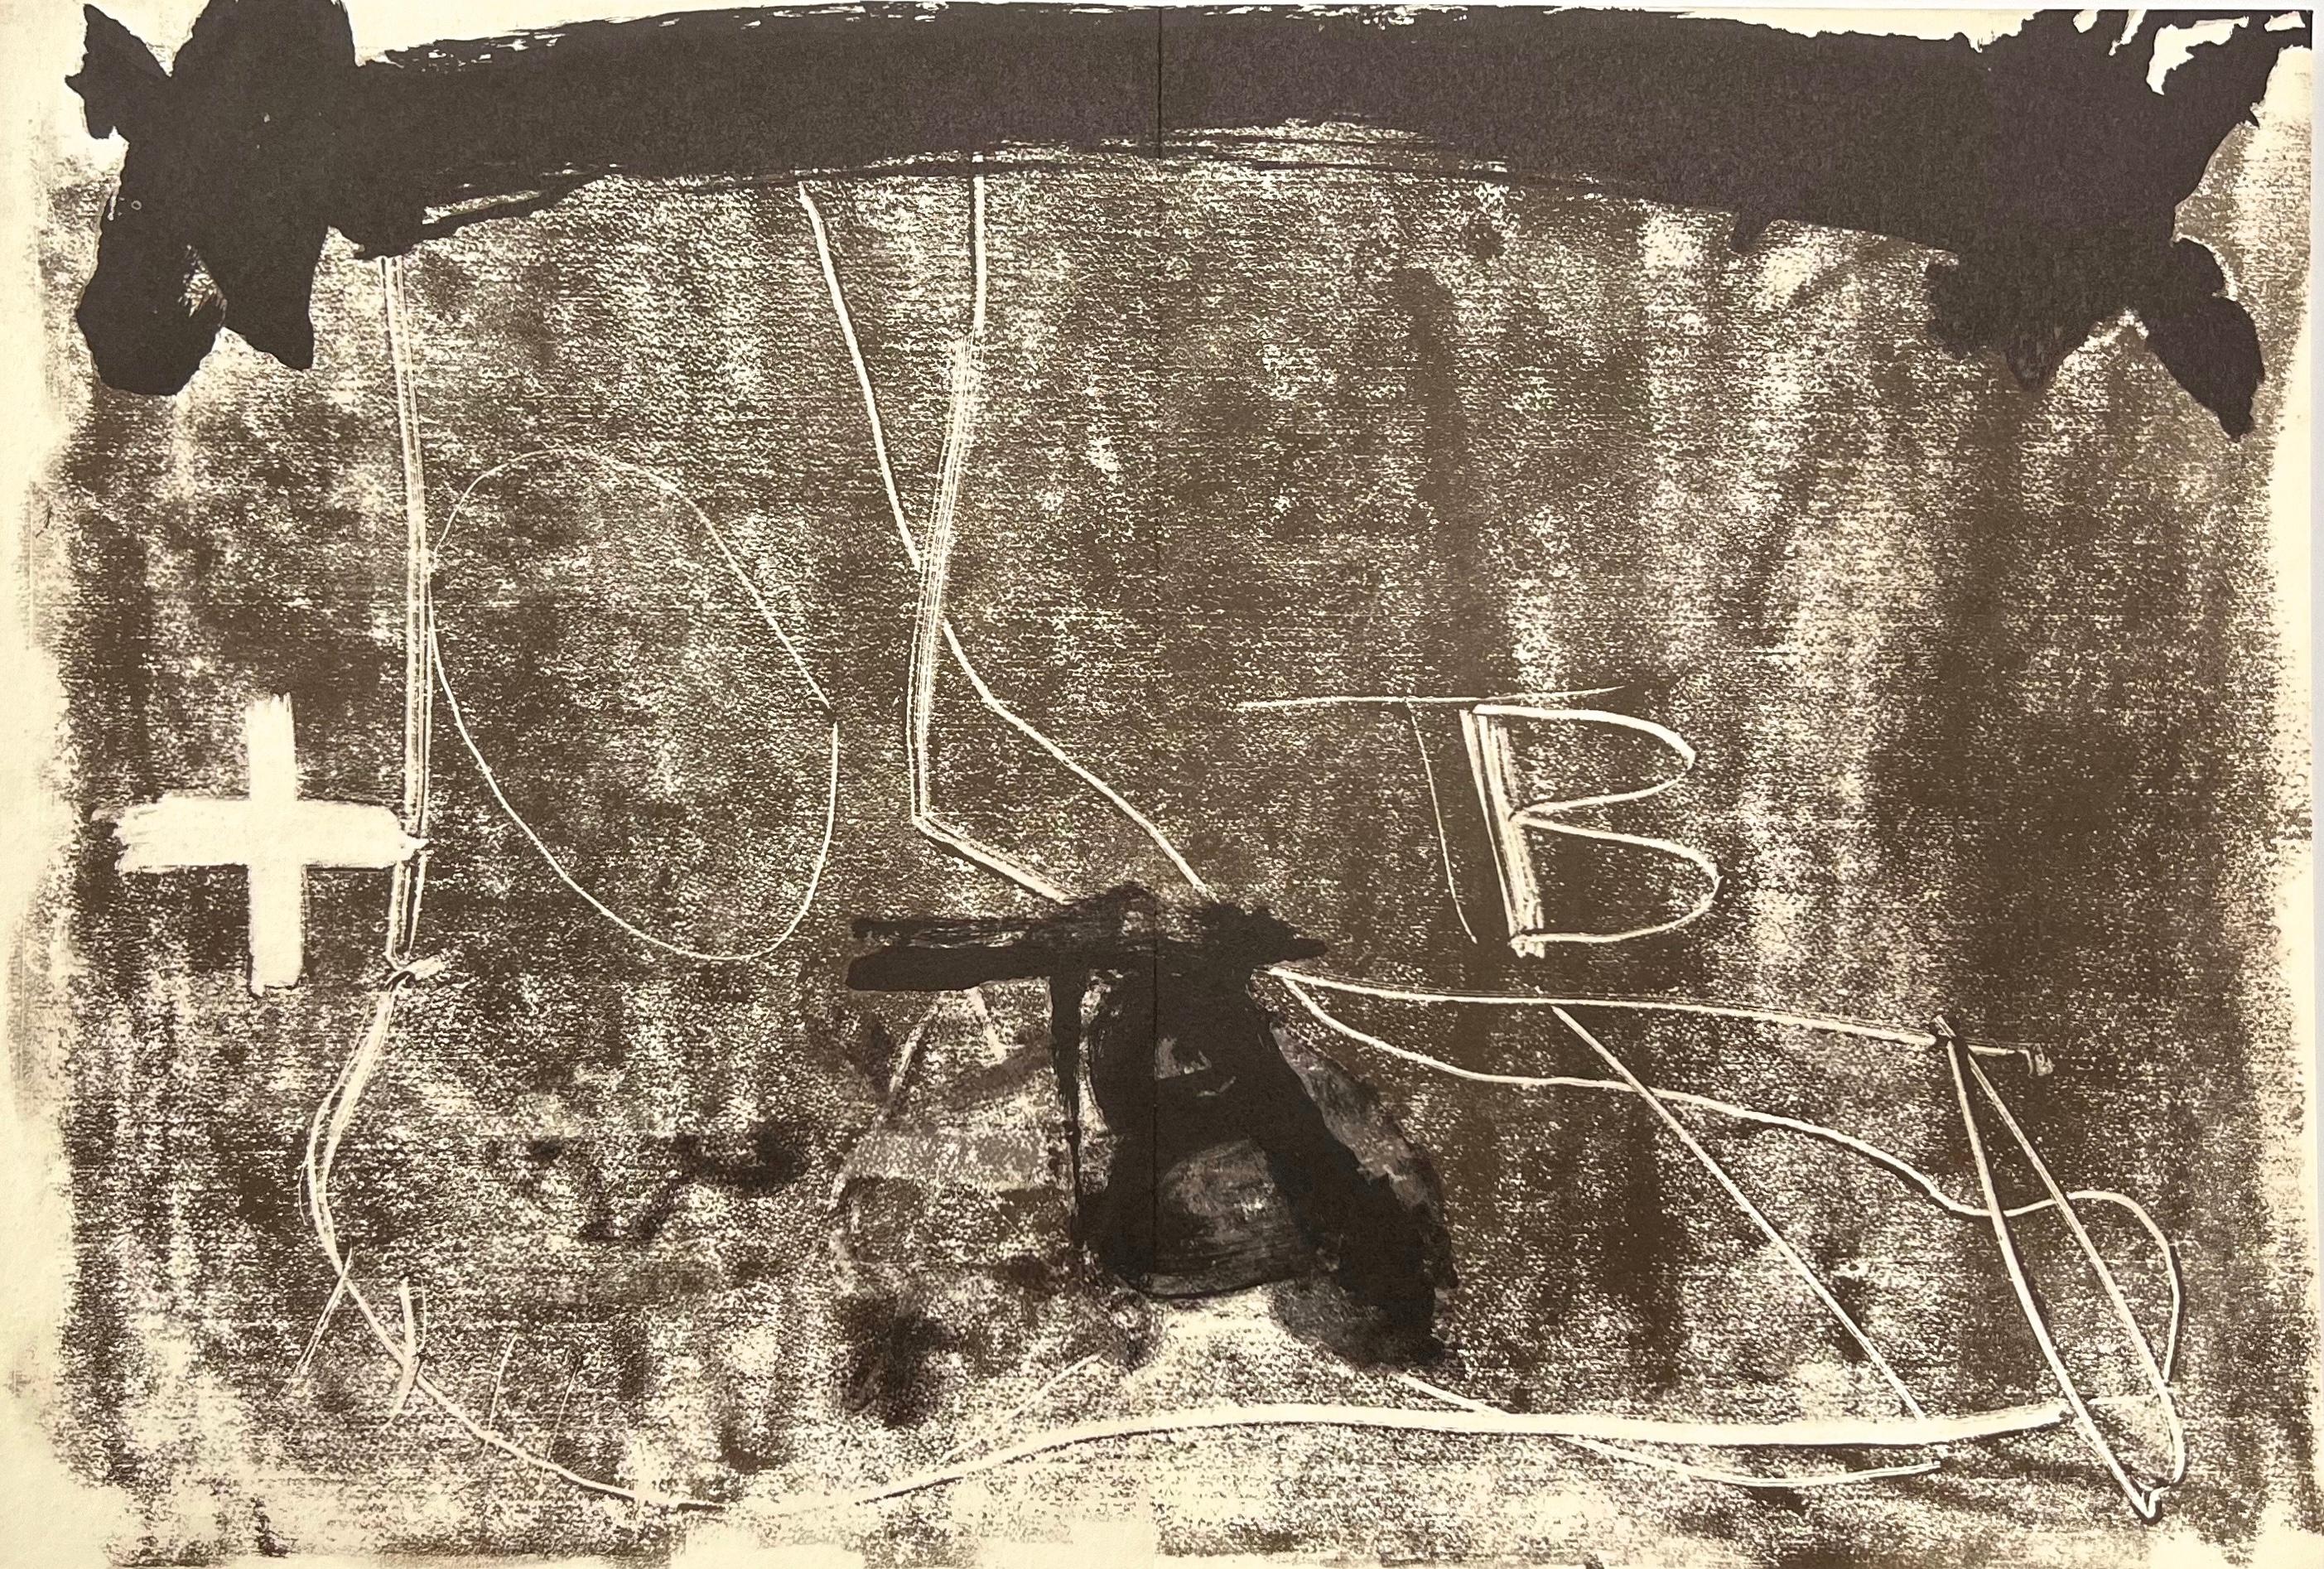 Still-Life Print Antoni Tàpies - Tàpies, Composition, Derrière le miroir (après)